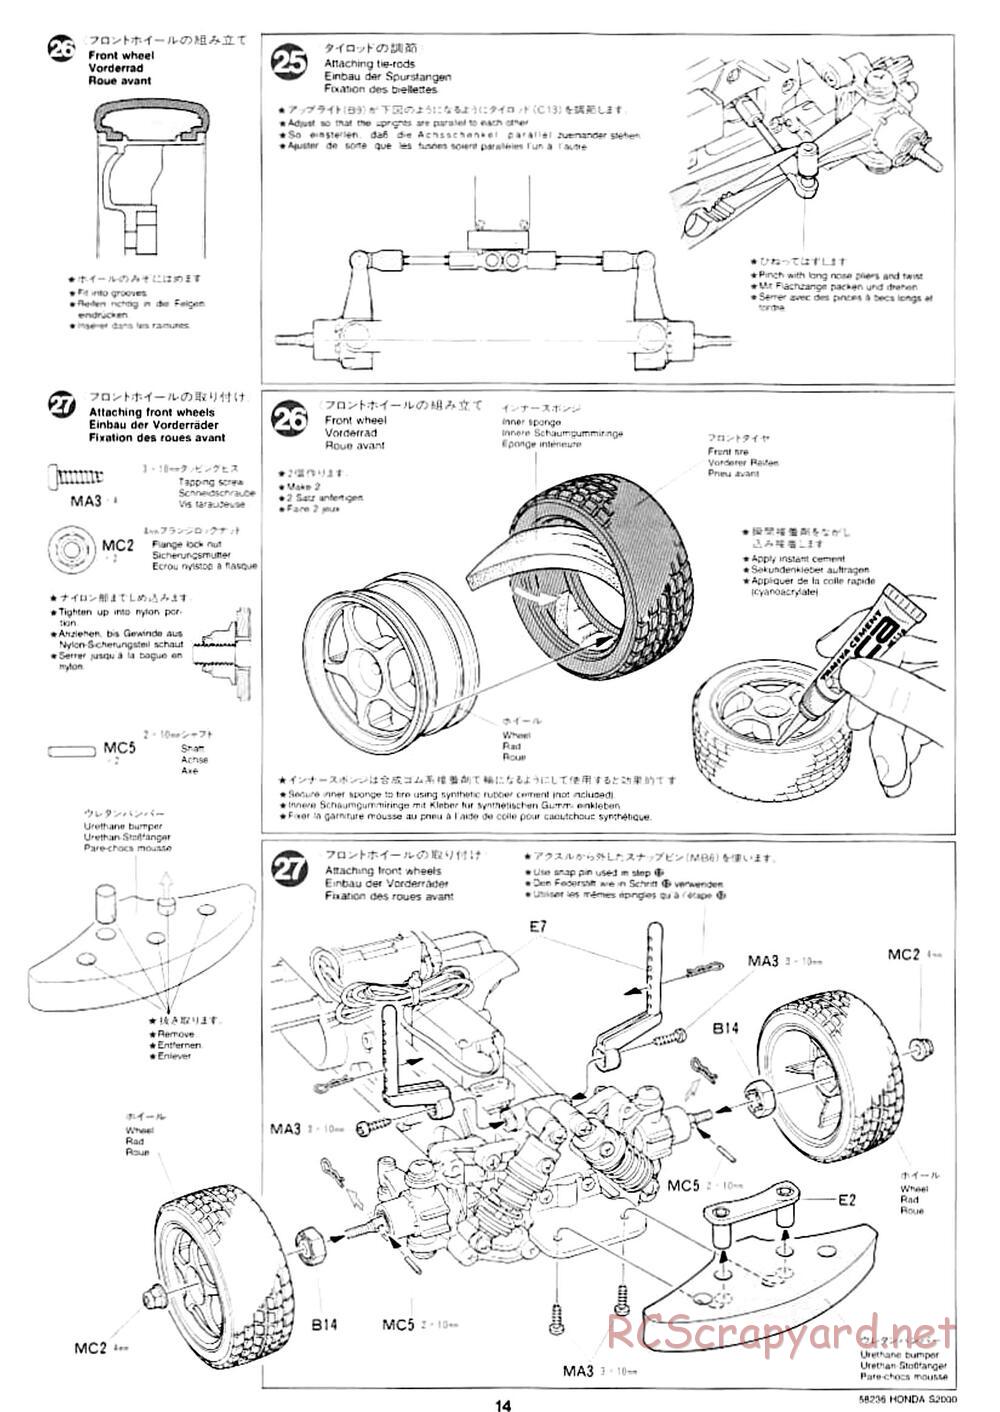 Tamiya - Honda S2000 - M04L Chassis - Manual - Page 12